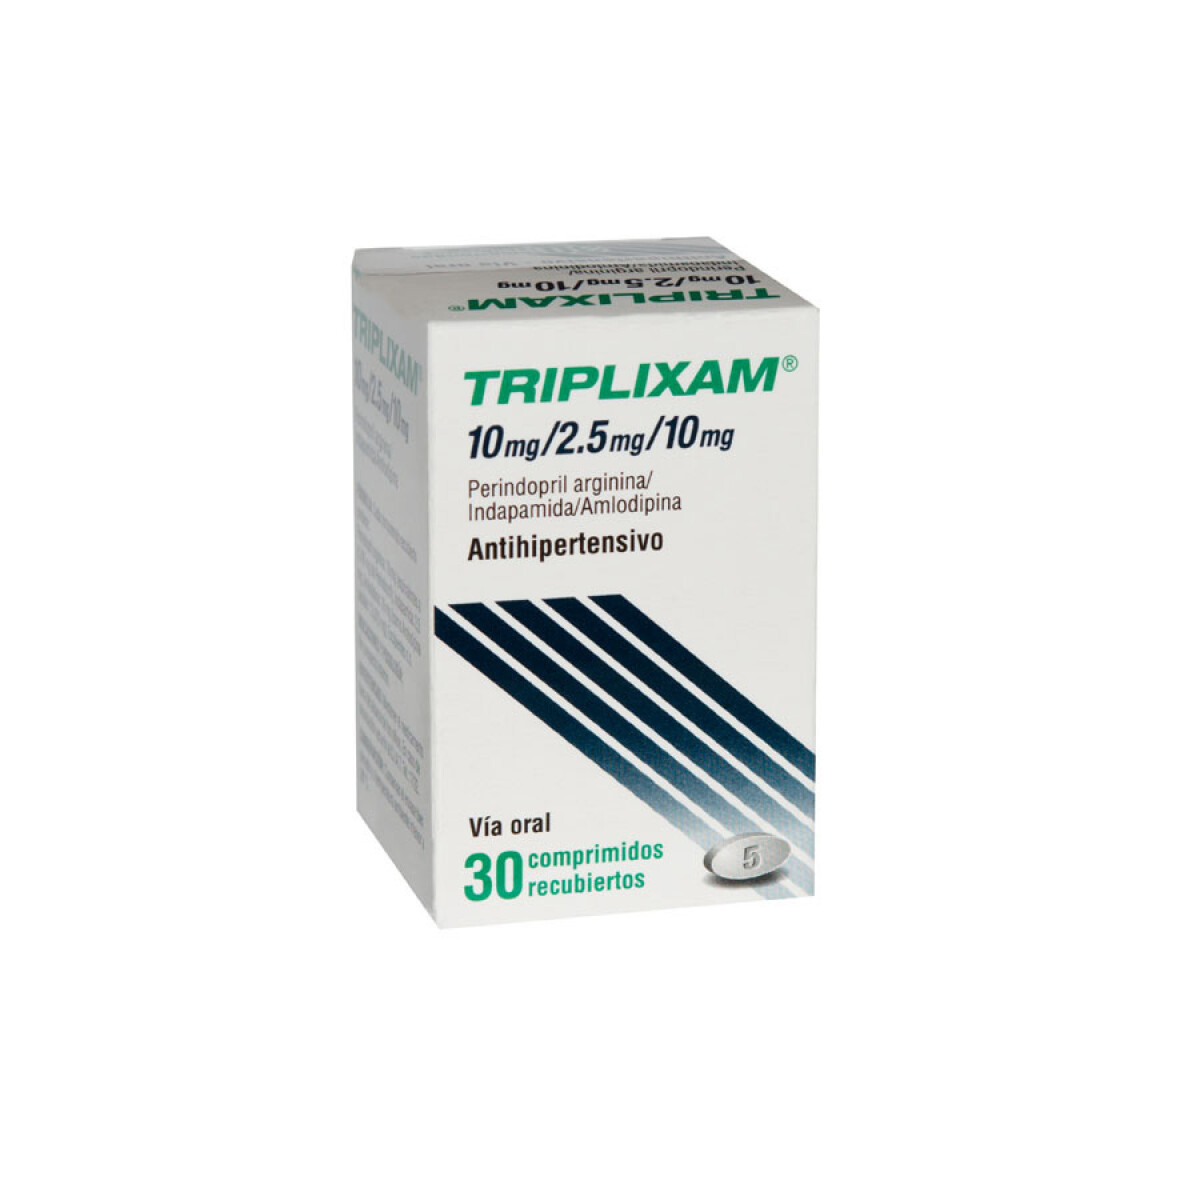 Triplixam 10/2.5/10 Mg 